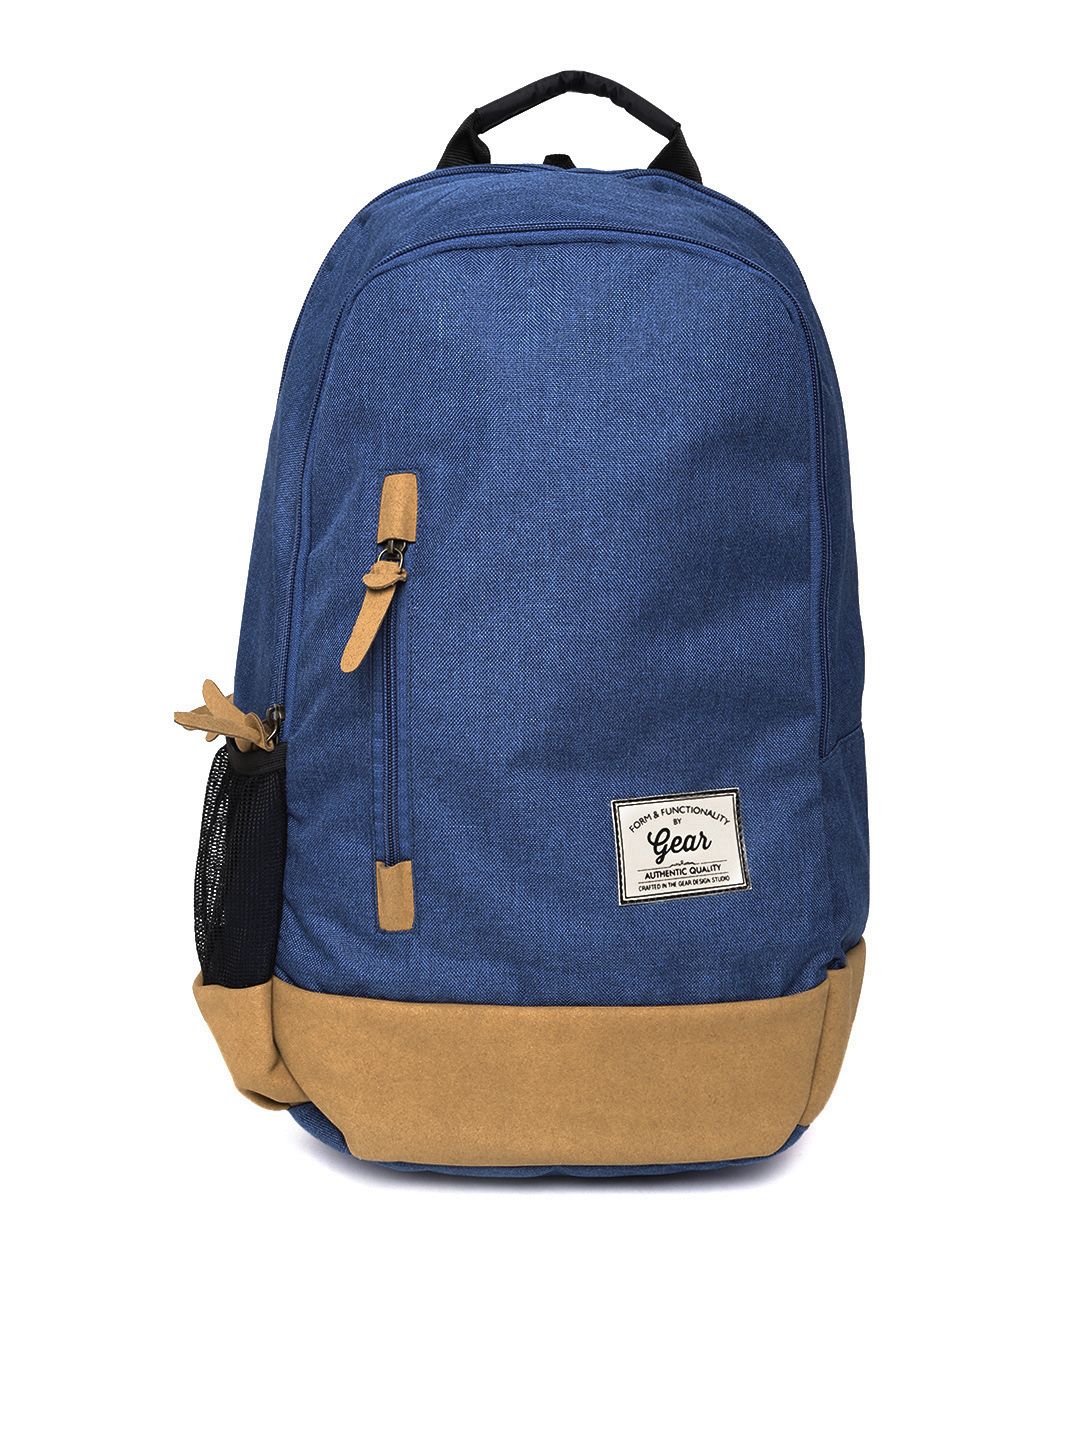 Gear Unisex Blue Waterproof Backpack Price in India